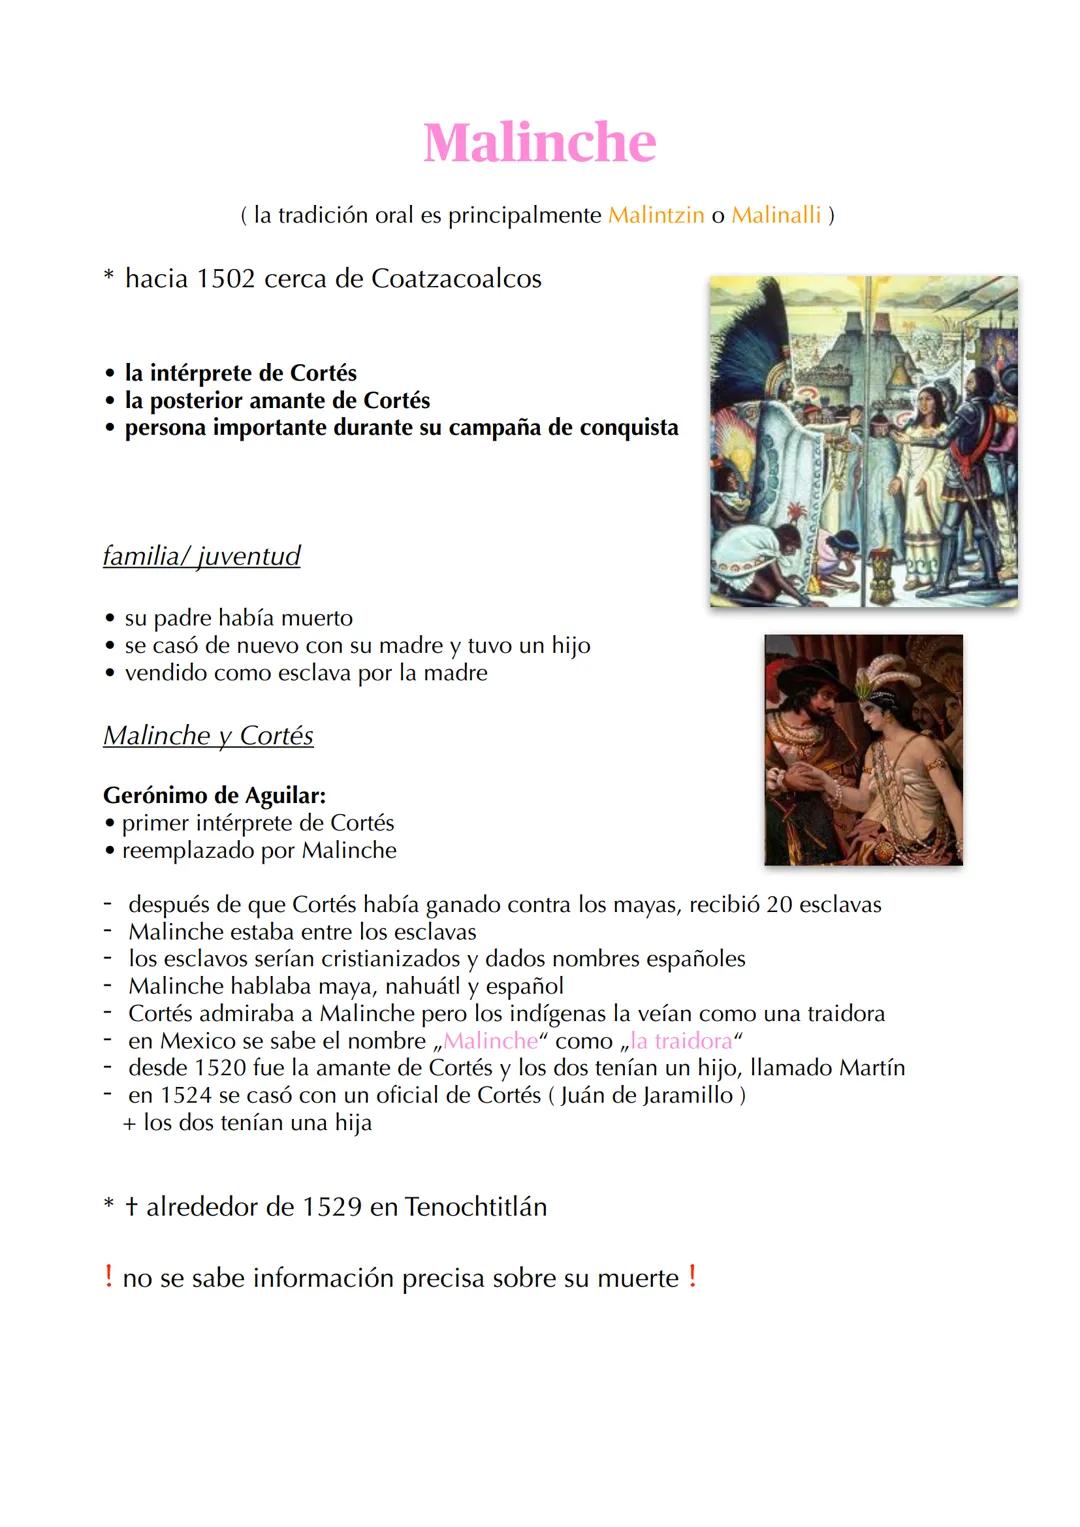 * hacia 1502 cerca de Coatzacoalcos
Malinche
(la tradición oral es principalmente Malintzin o Malinalli)
• la intérprete de Cortés
• la post